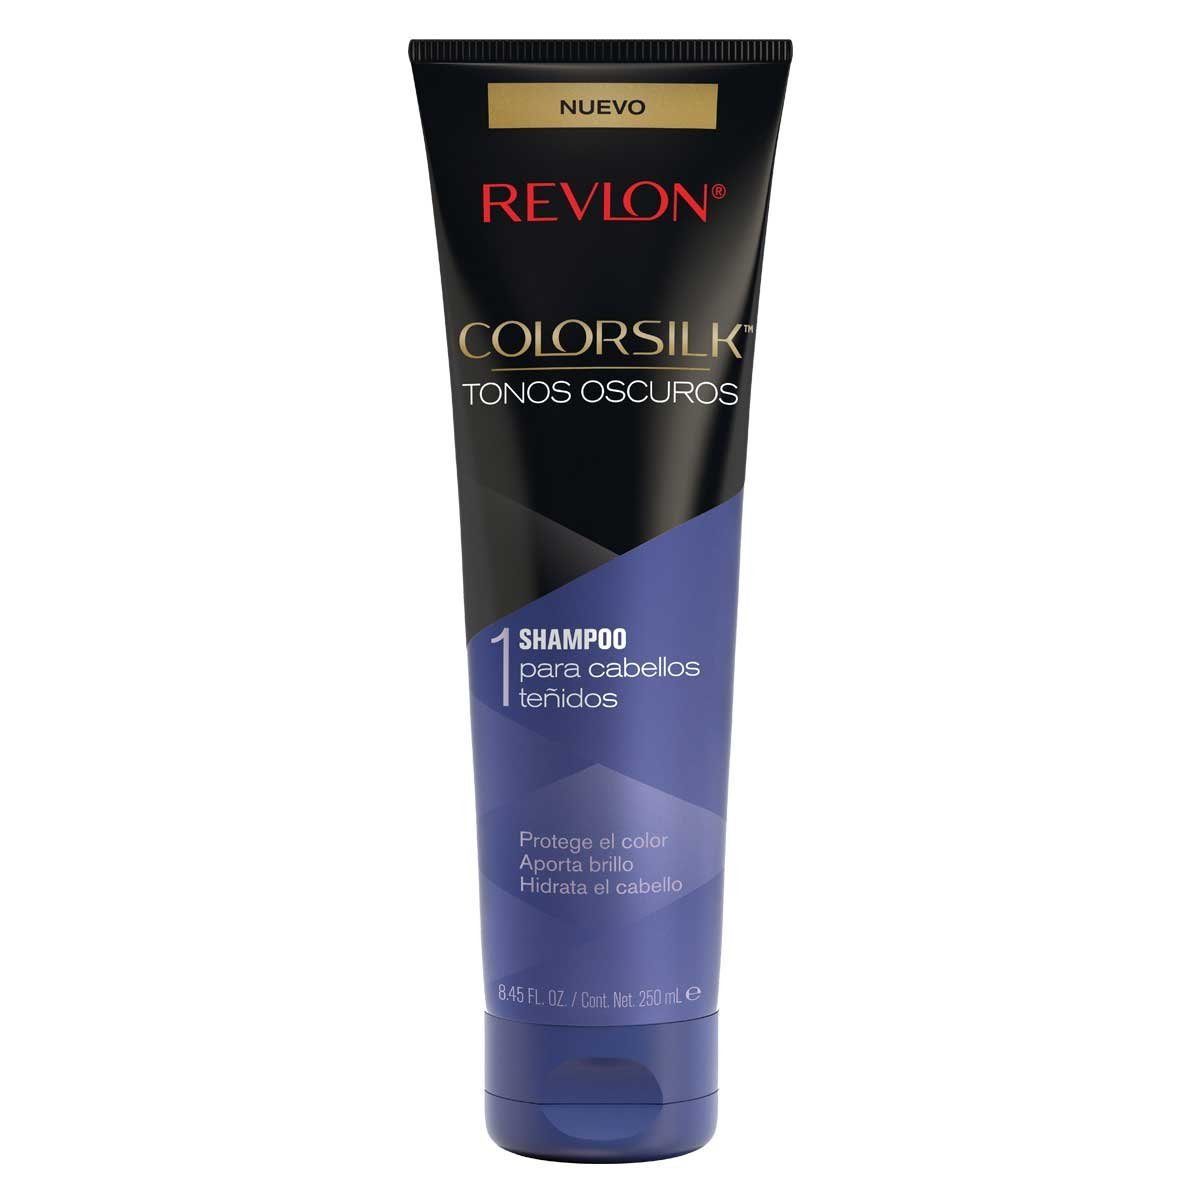 Shampoo Revlon para Cabellos Teñidos Colorsilk Tonos Oscuros